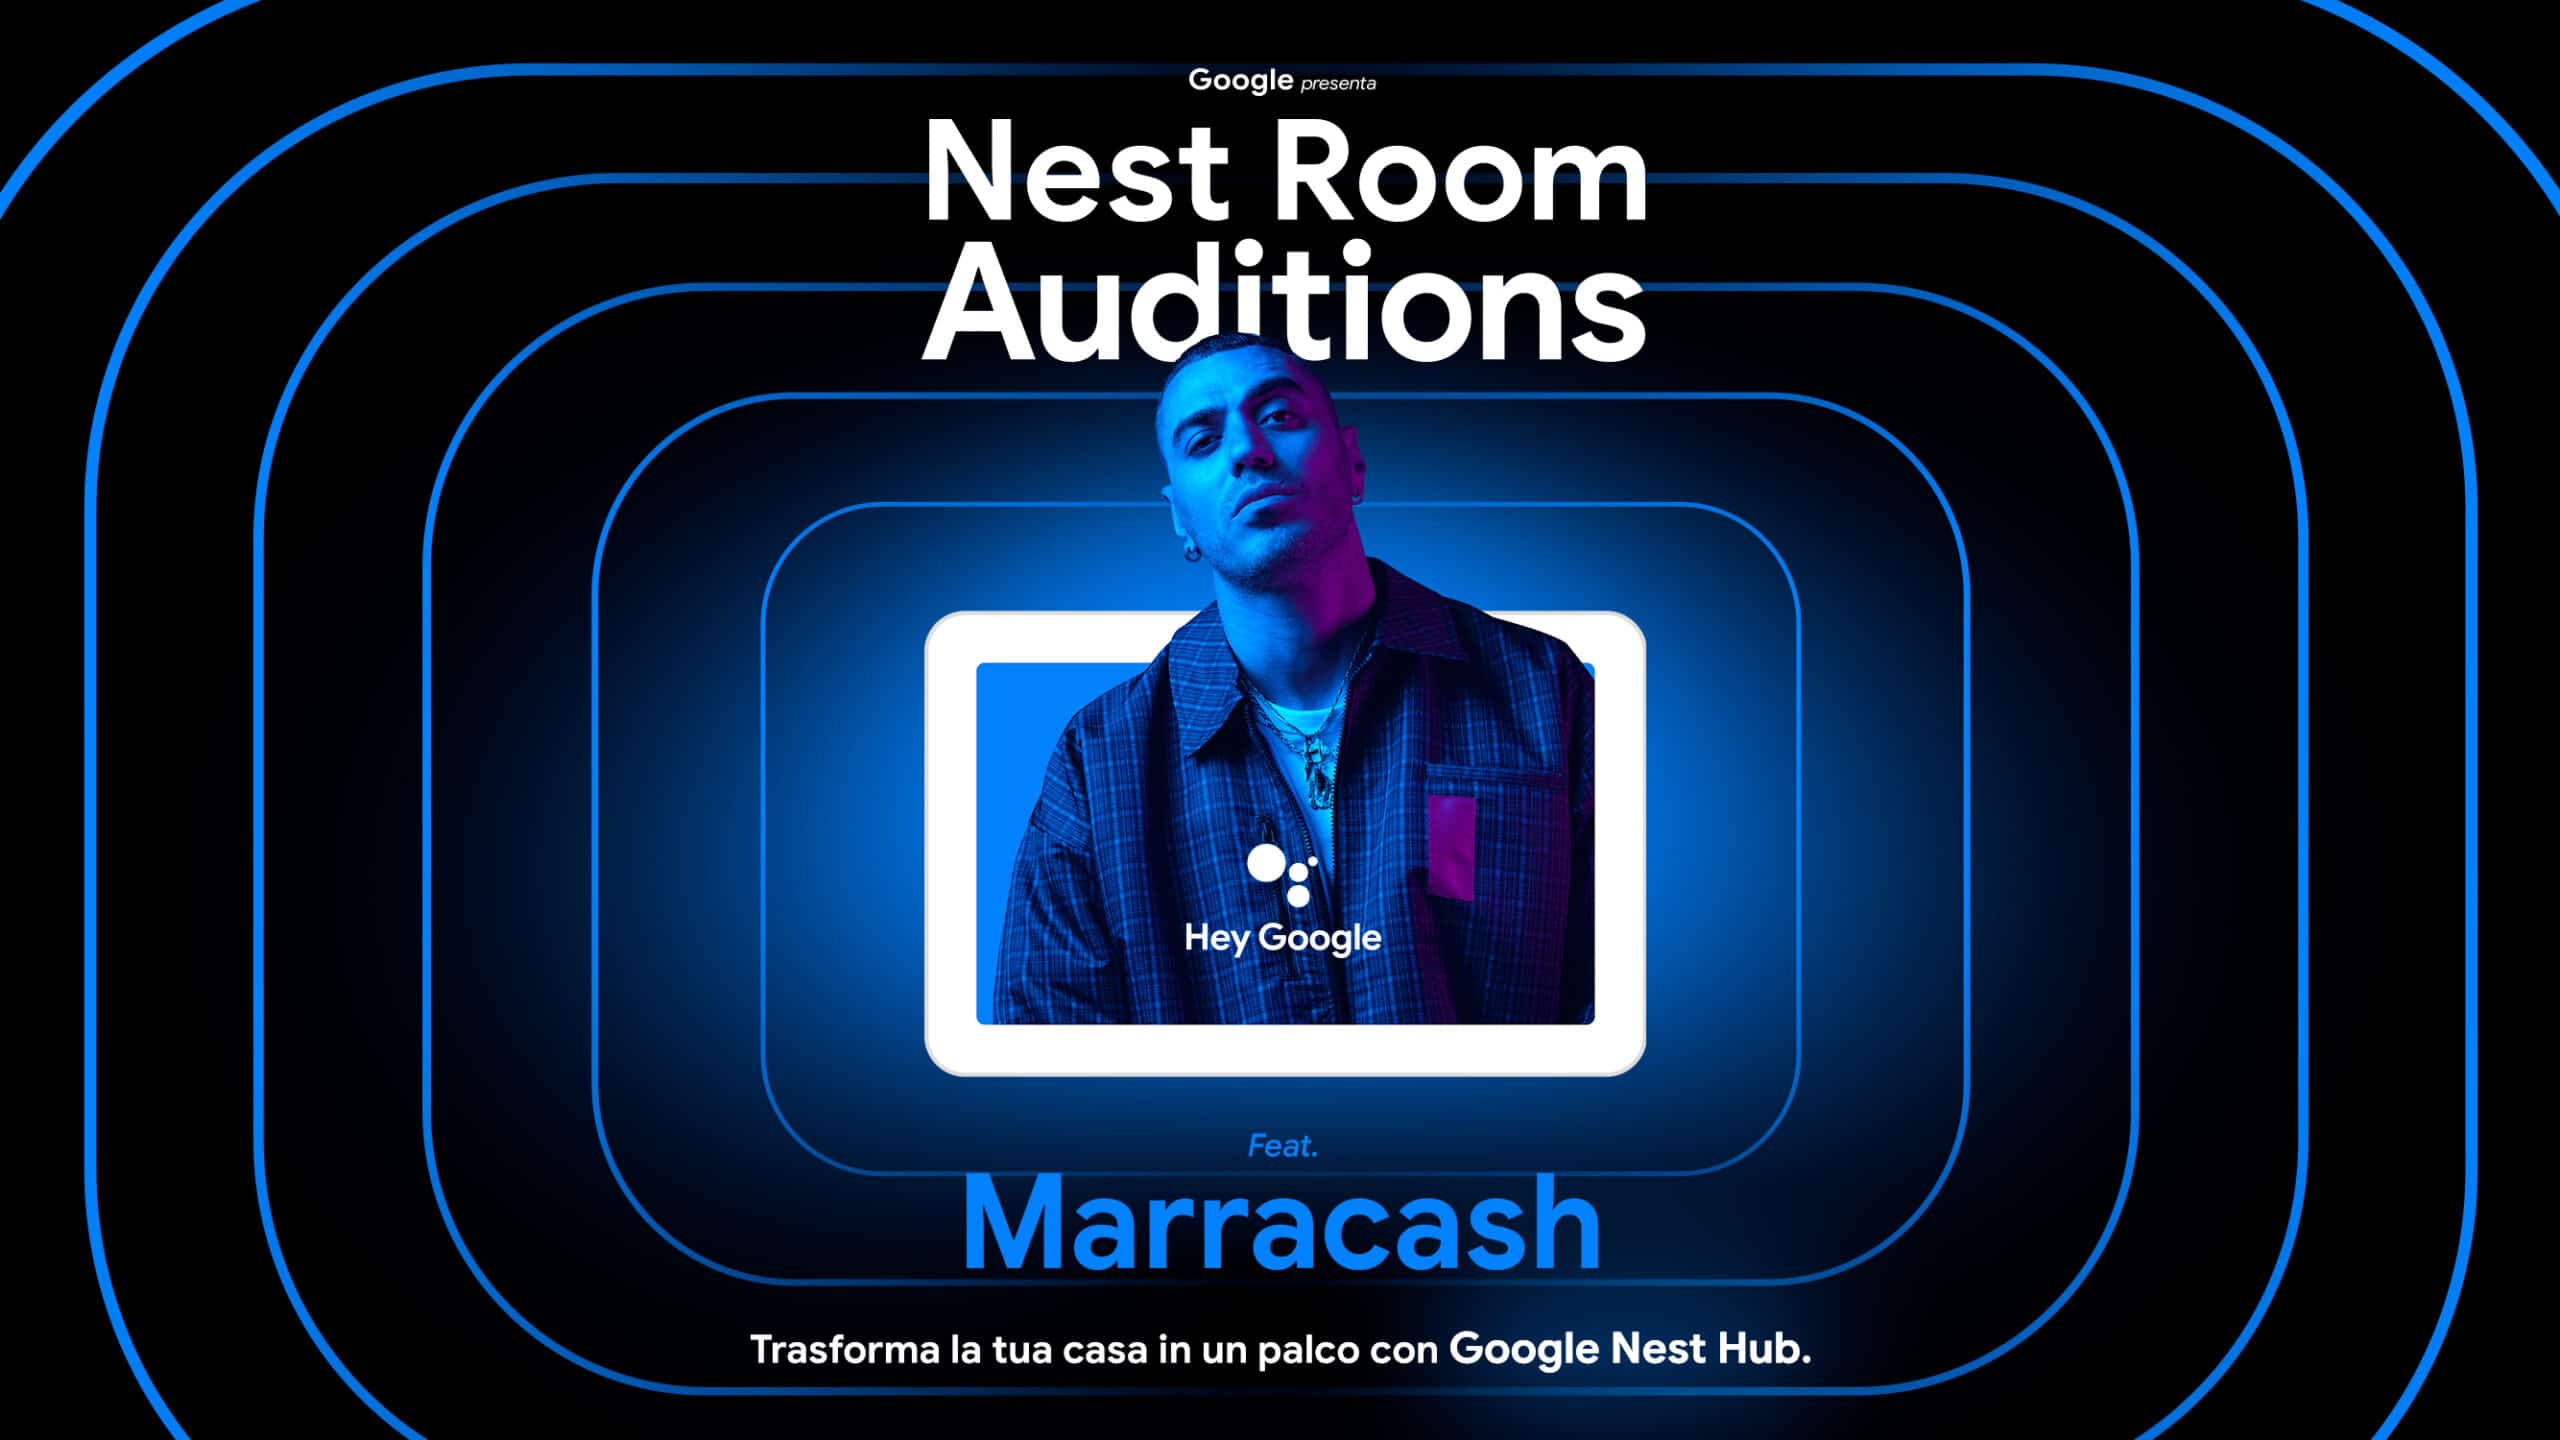 Google e Marracash alla ricerca dei nuovi talenti musicali con Nest Room Audition thumbnail